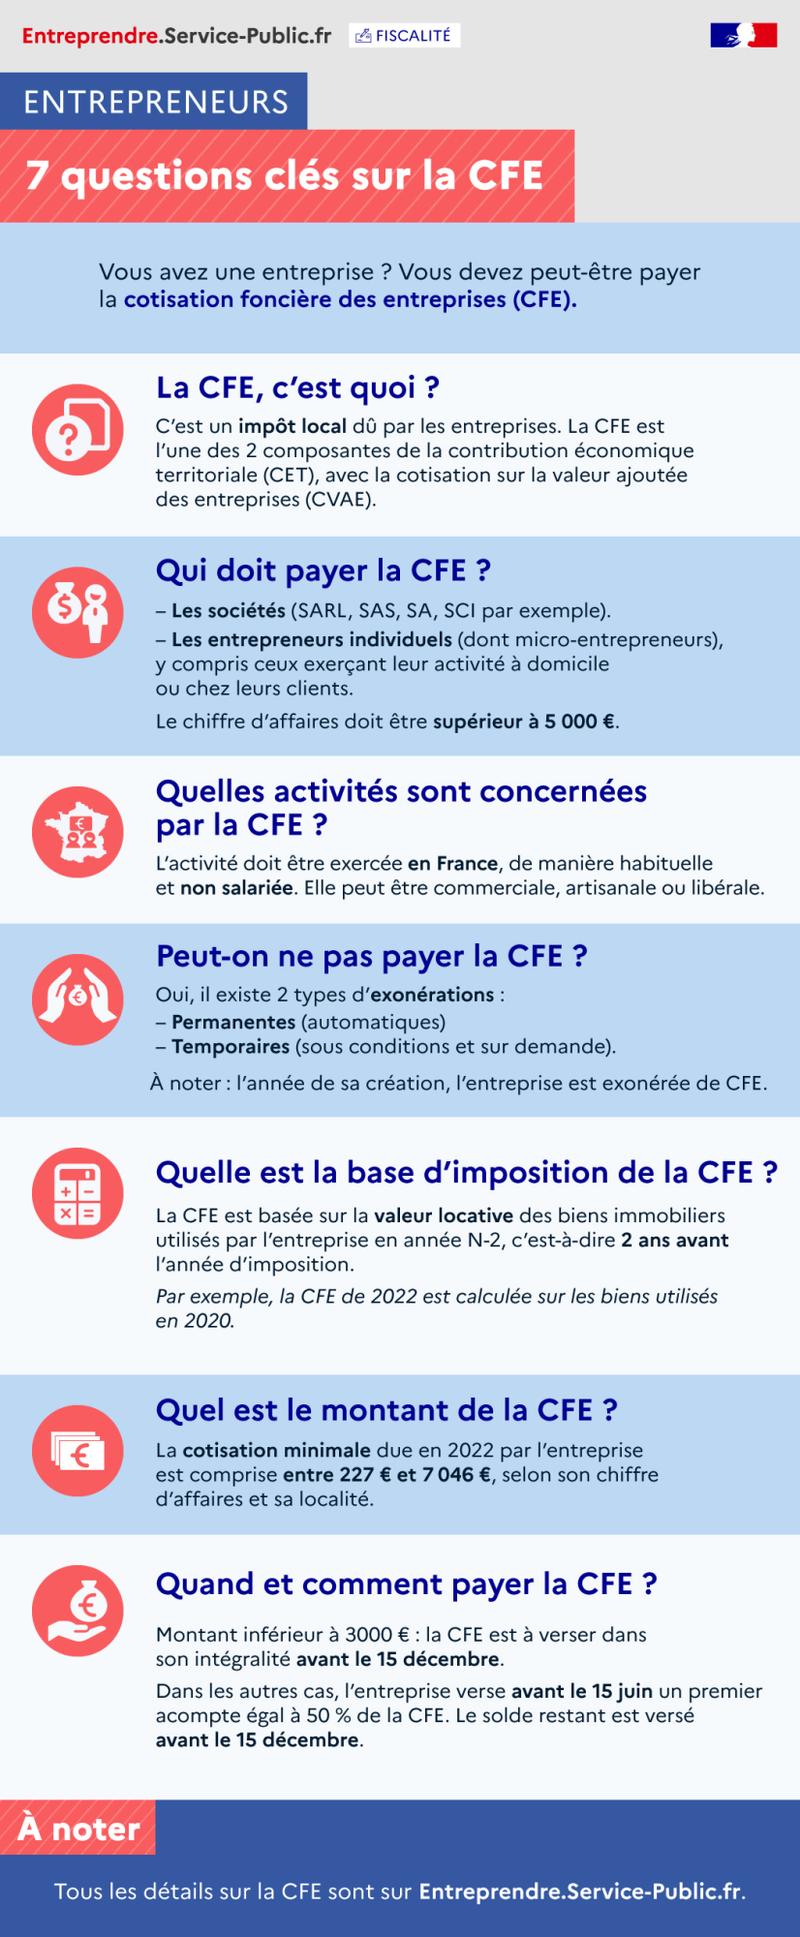 Quelles sont les principales caractéristiques de la cotisation foncière des entreprises (CFE) ? - Points clés sur la CFE - plus de détails dans le texte suivant l’infographie